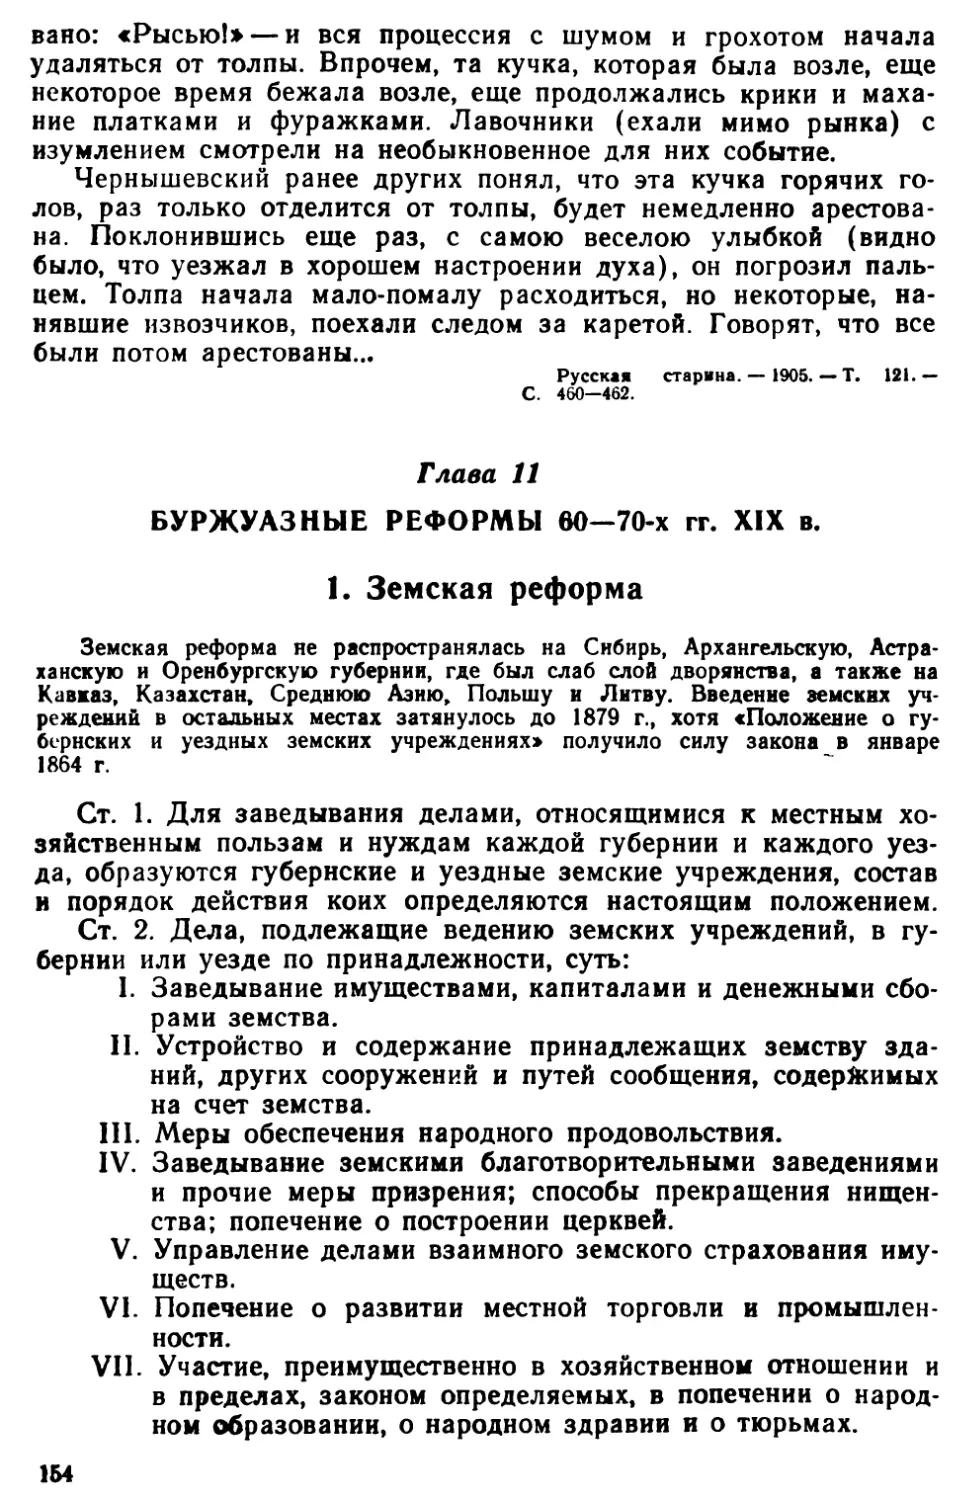 Глава 11. Буржуазные реформы 60—70-х гг. XIX в